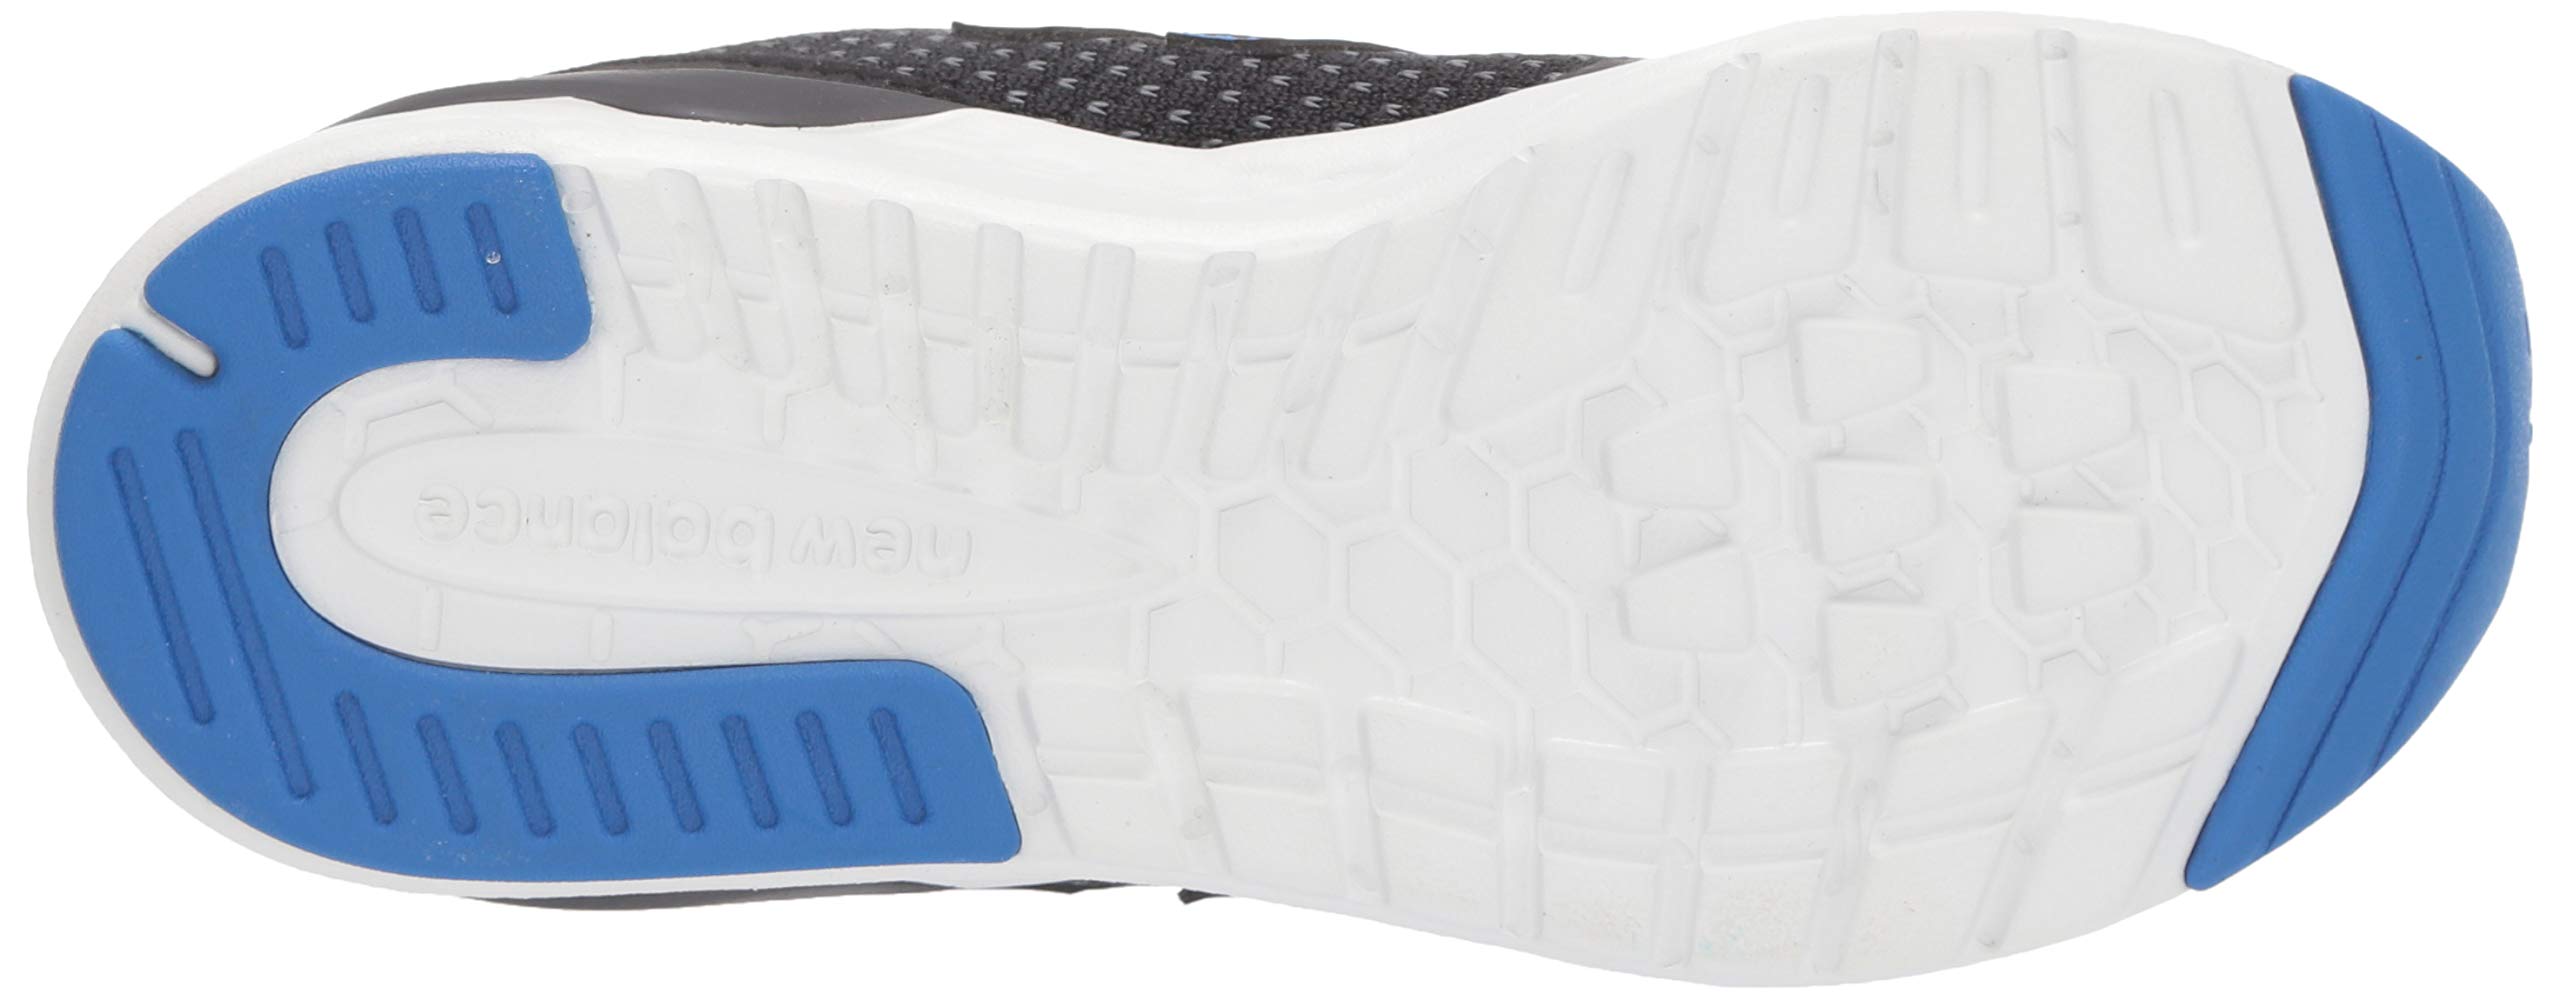 New Balance Unisex-Child Fresh Foam 515 Sport V2 Sneaker